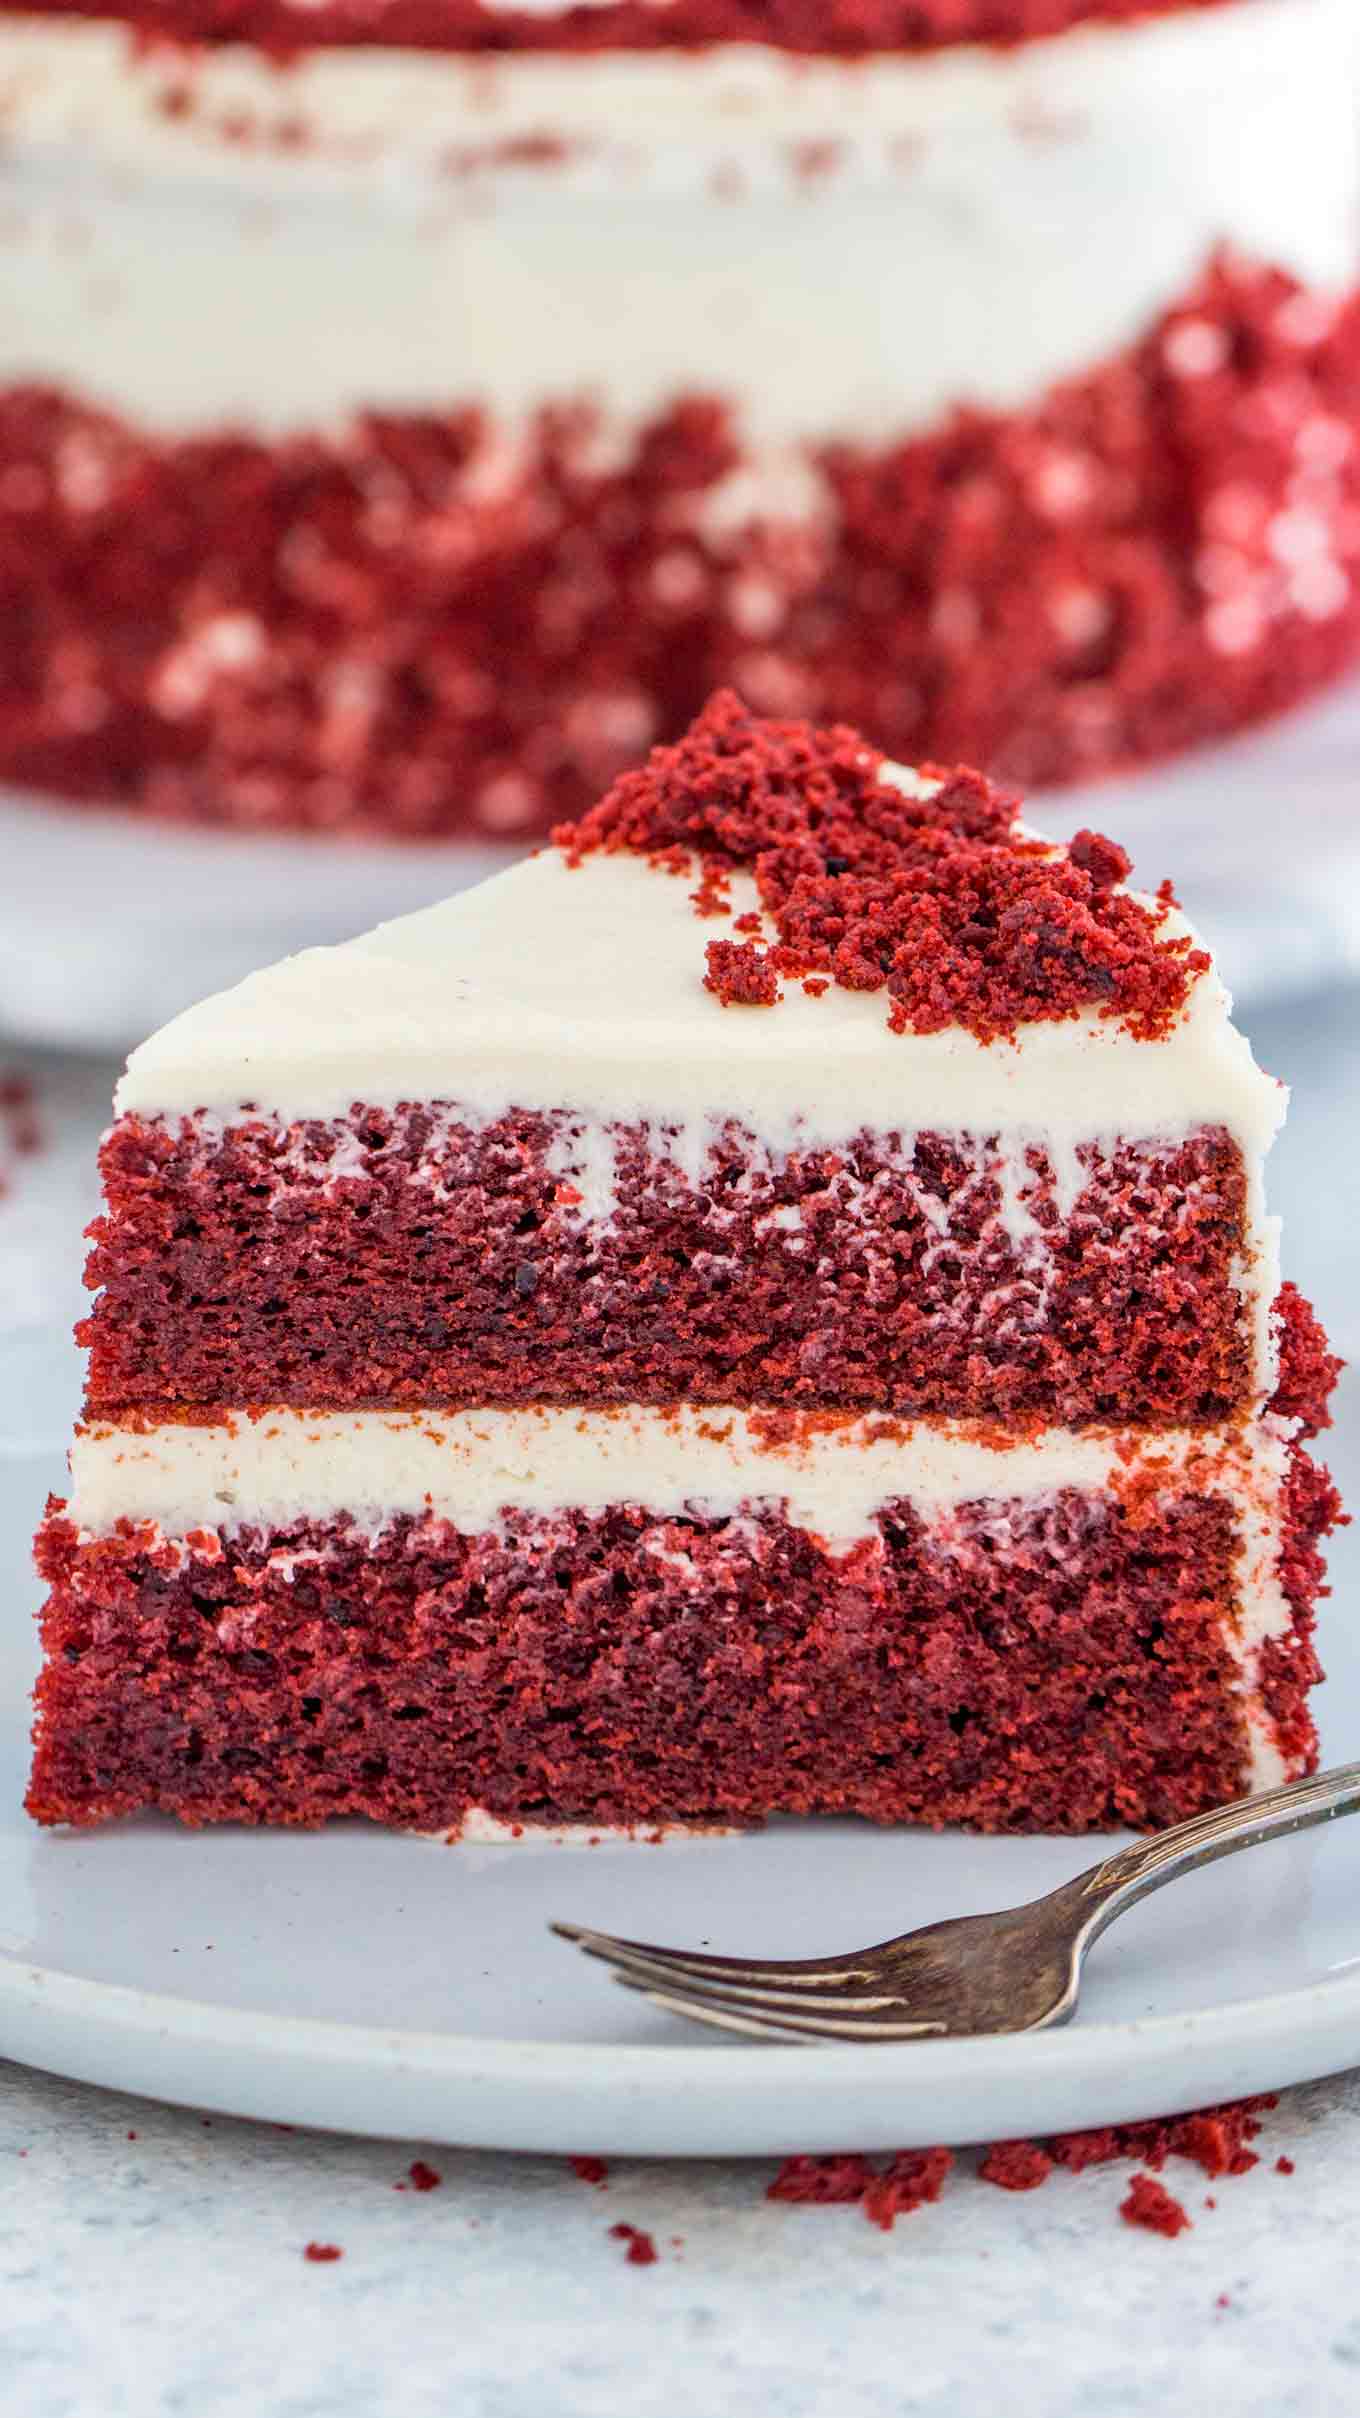 Share more than 66 red velvet cake videos best - in.daotaonec